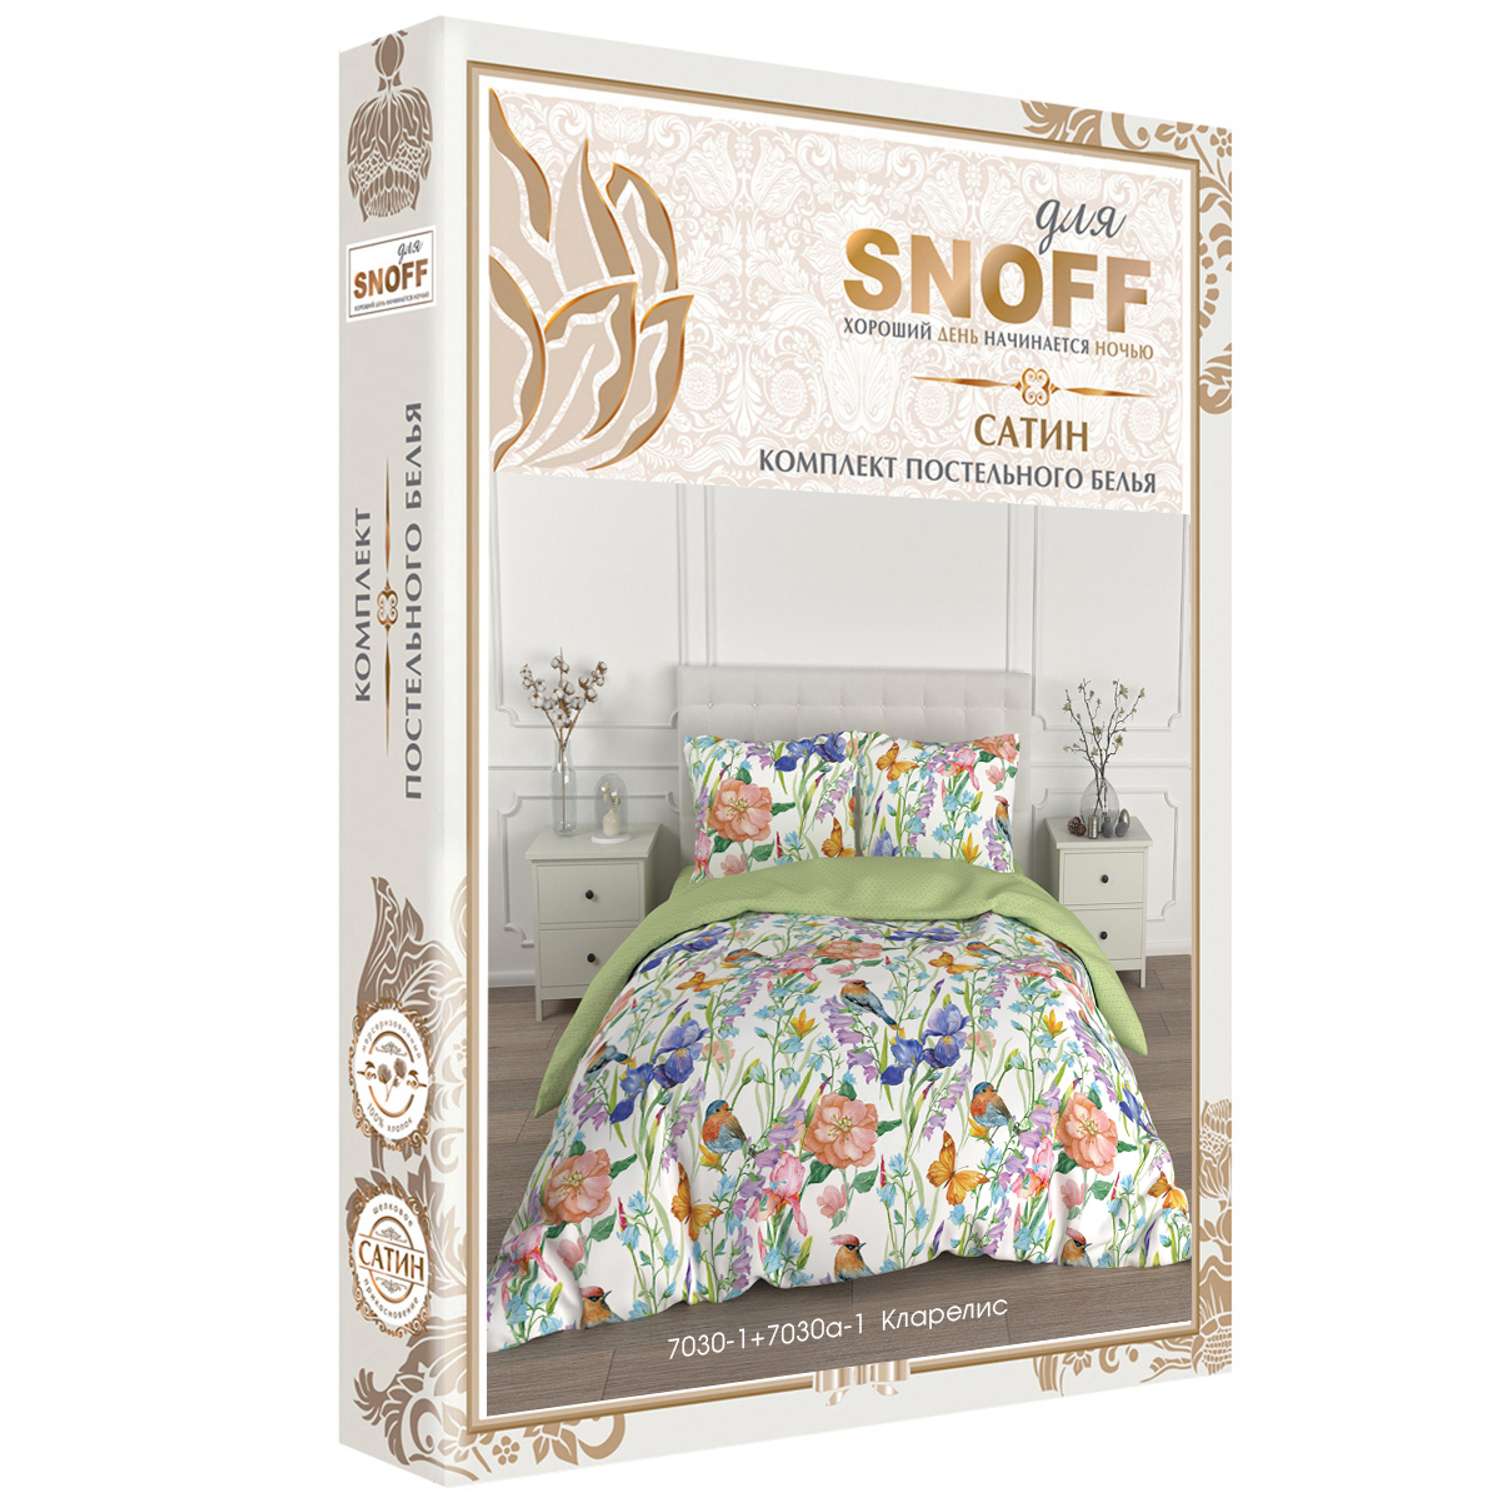 Комплект постельного белья для SNOFF Кларелис евро сатин рис.7030-1+7030а-1 - фото 7